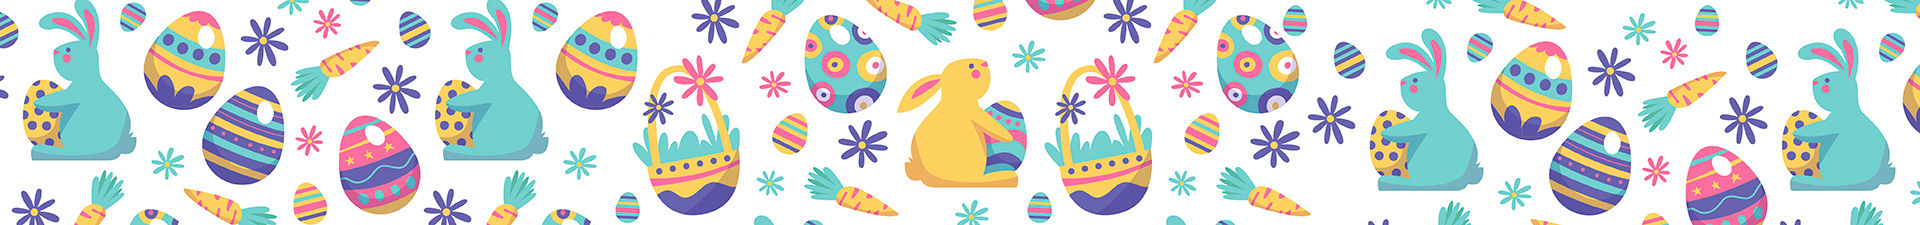 Pasqua: uova decorative e decorazioni